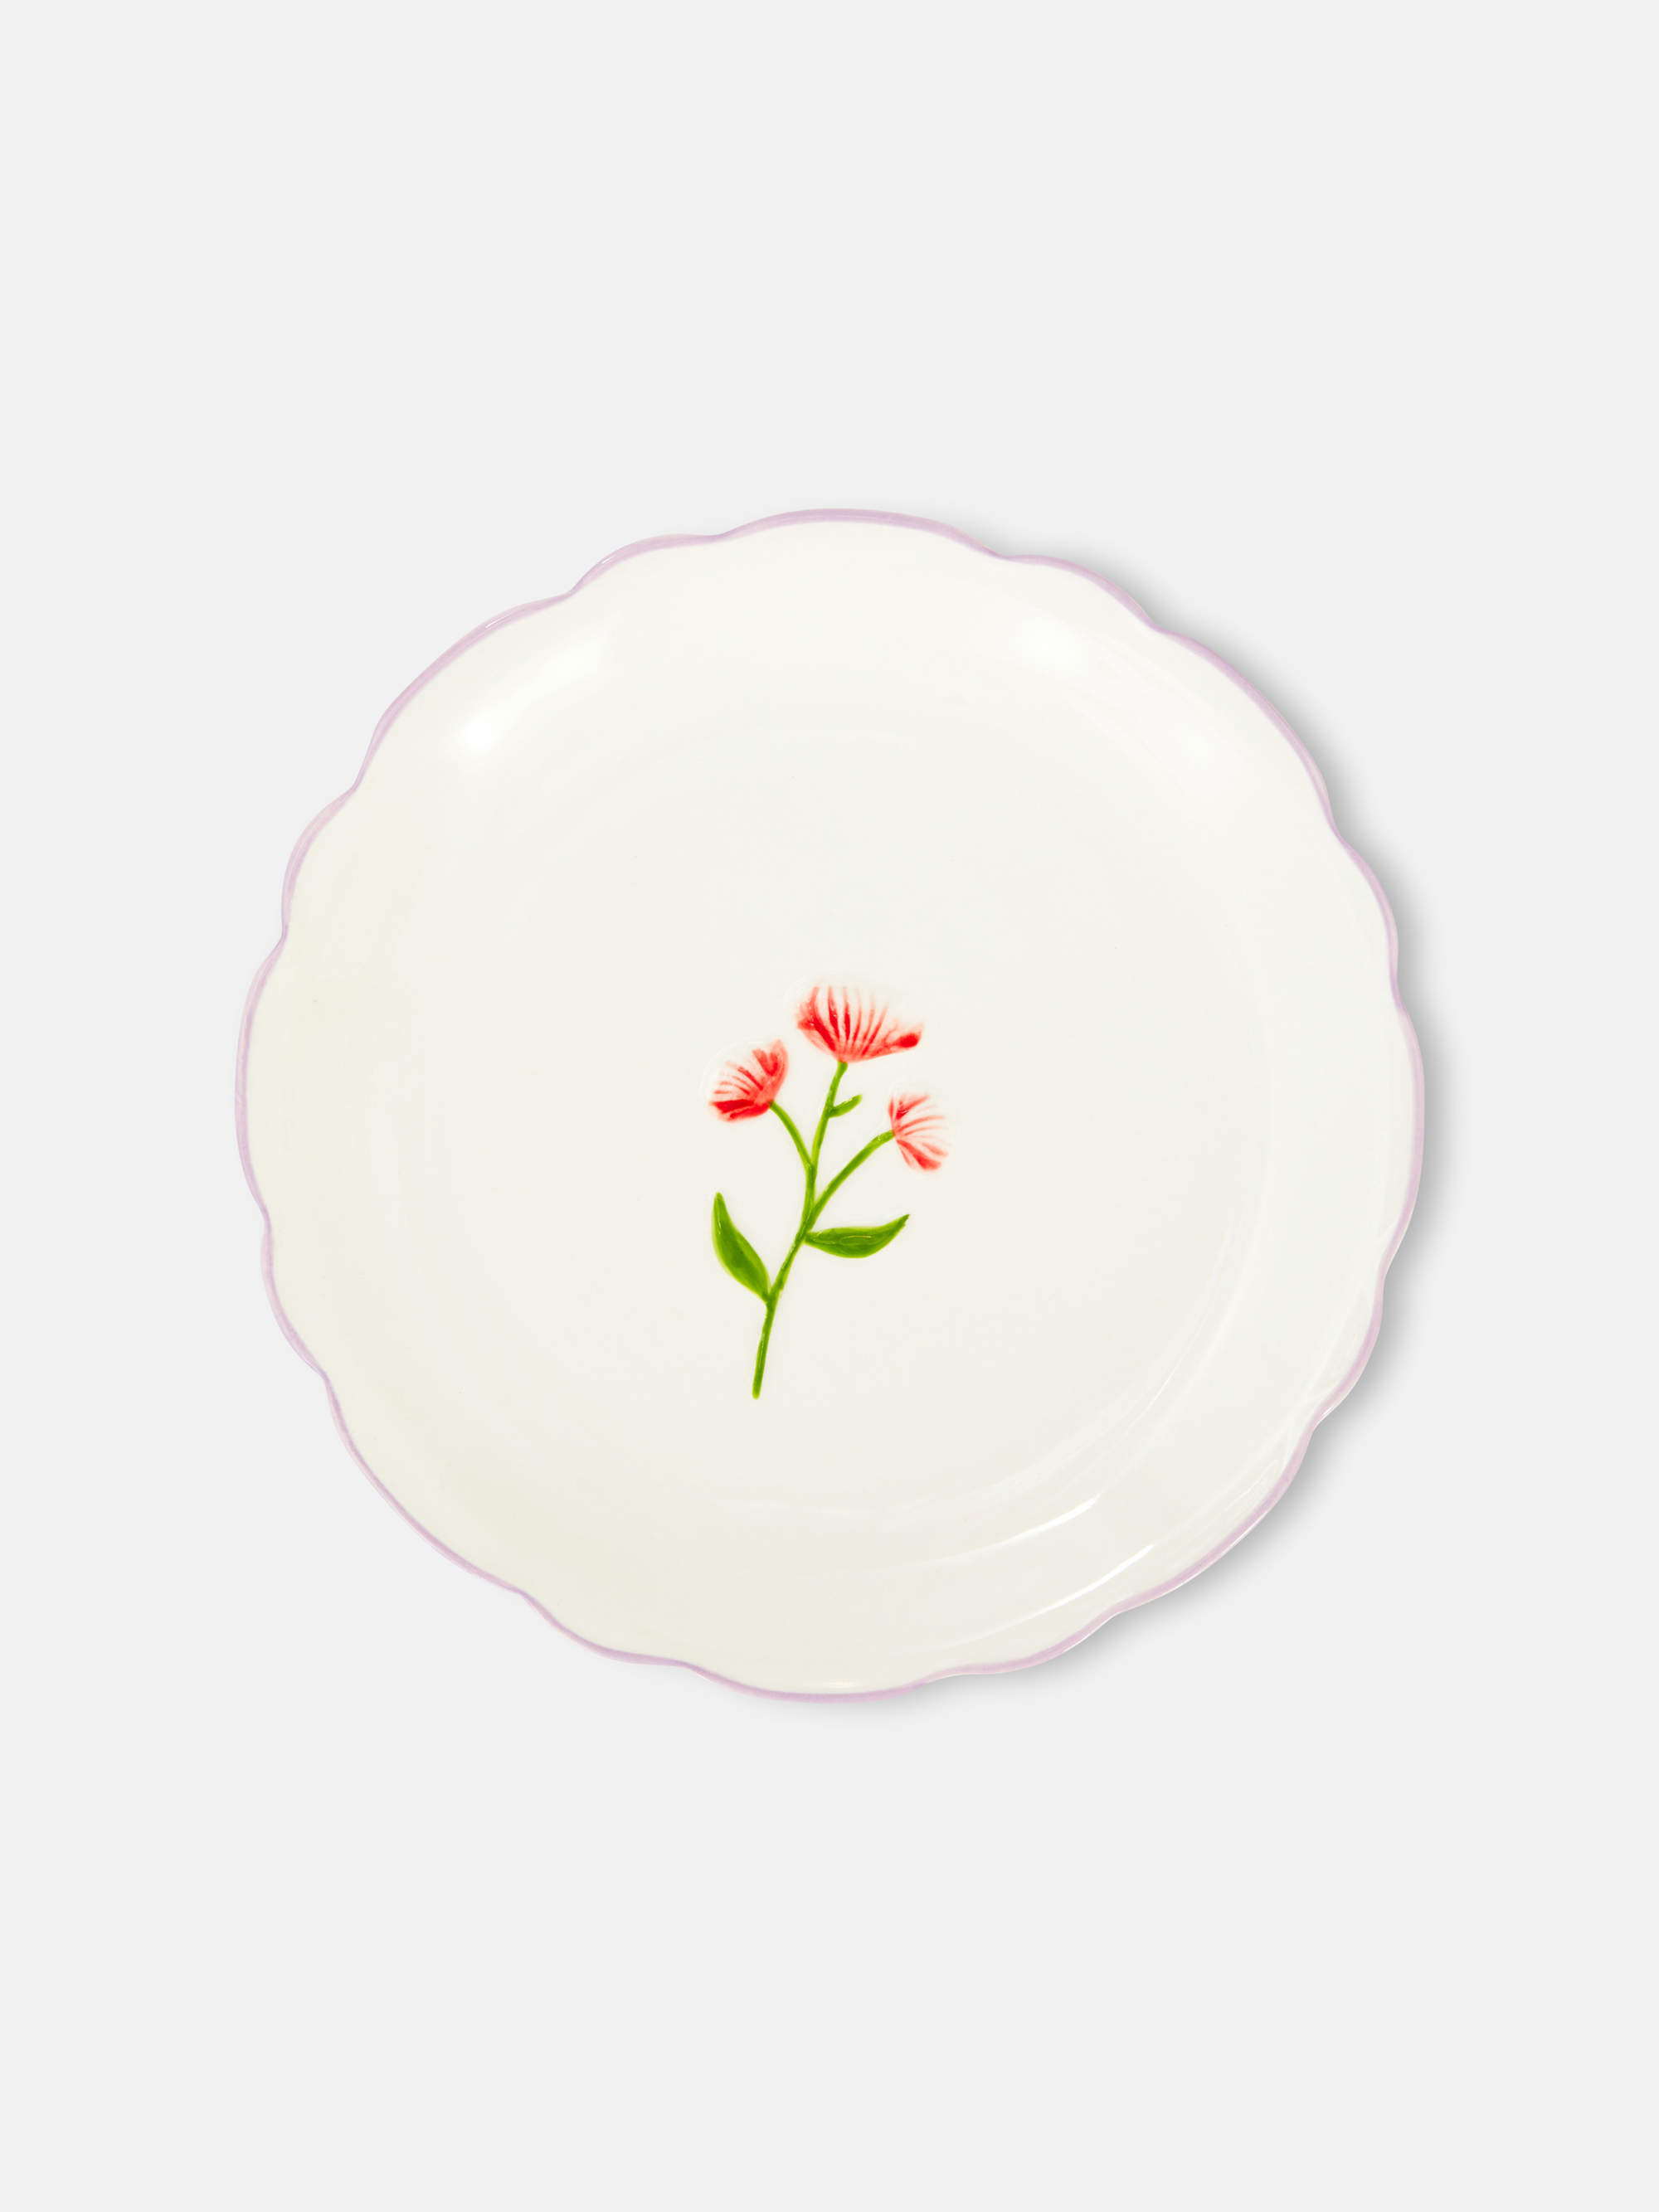 Plato blanco con flor.